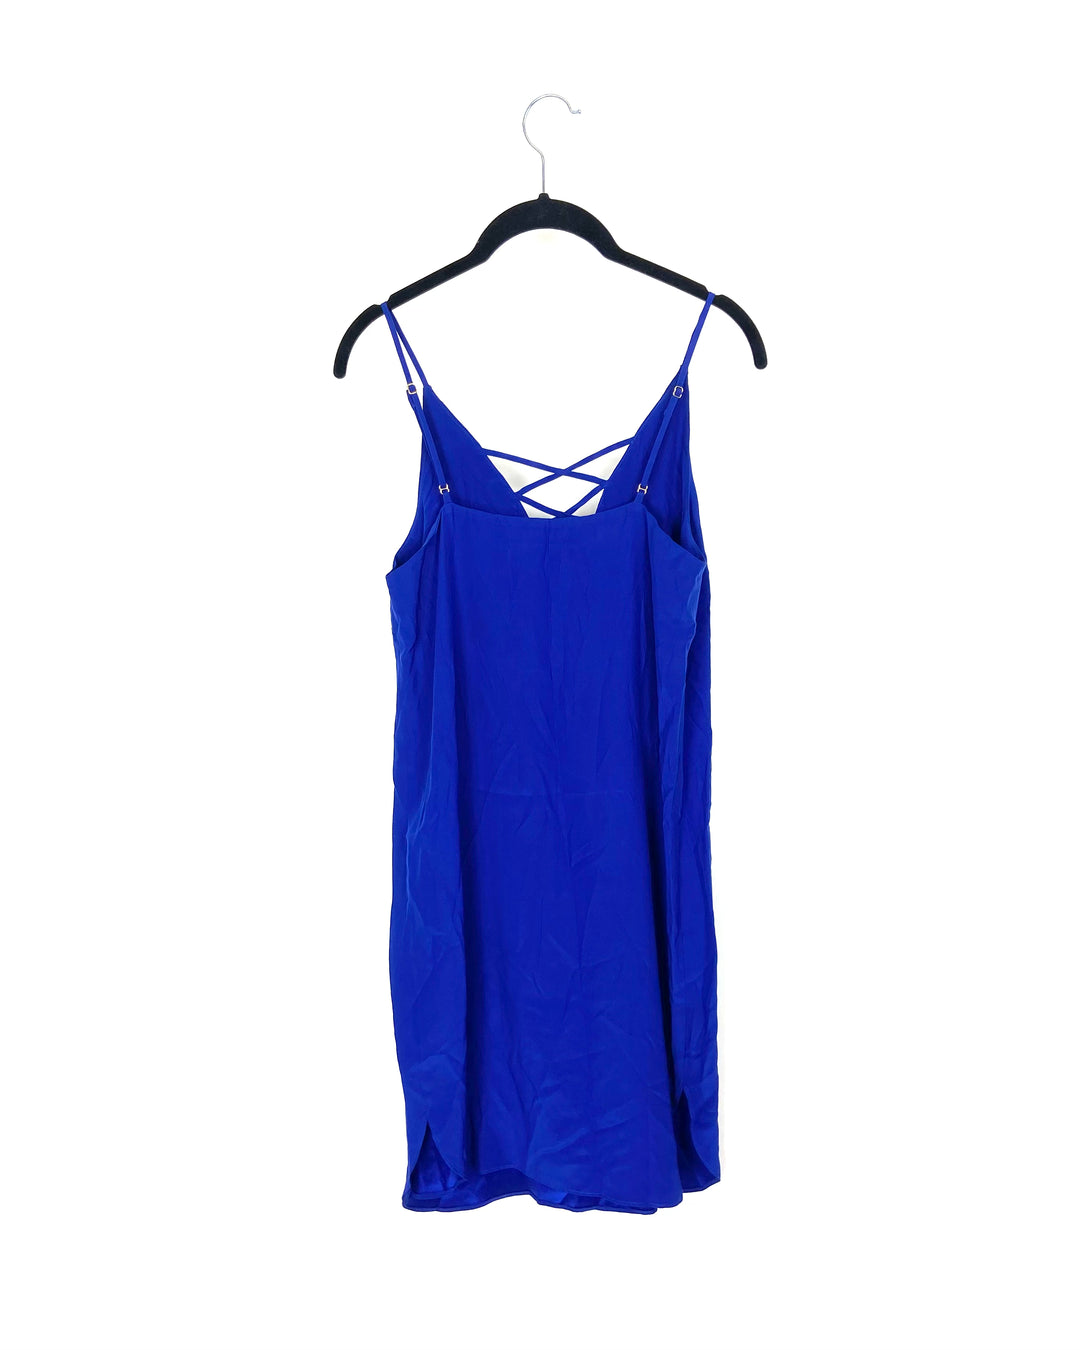 Blue Criss Cross Dress - Size 4-6